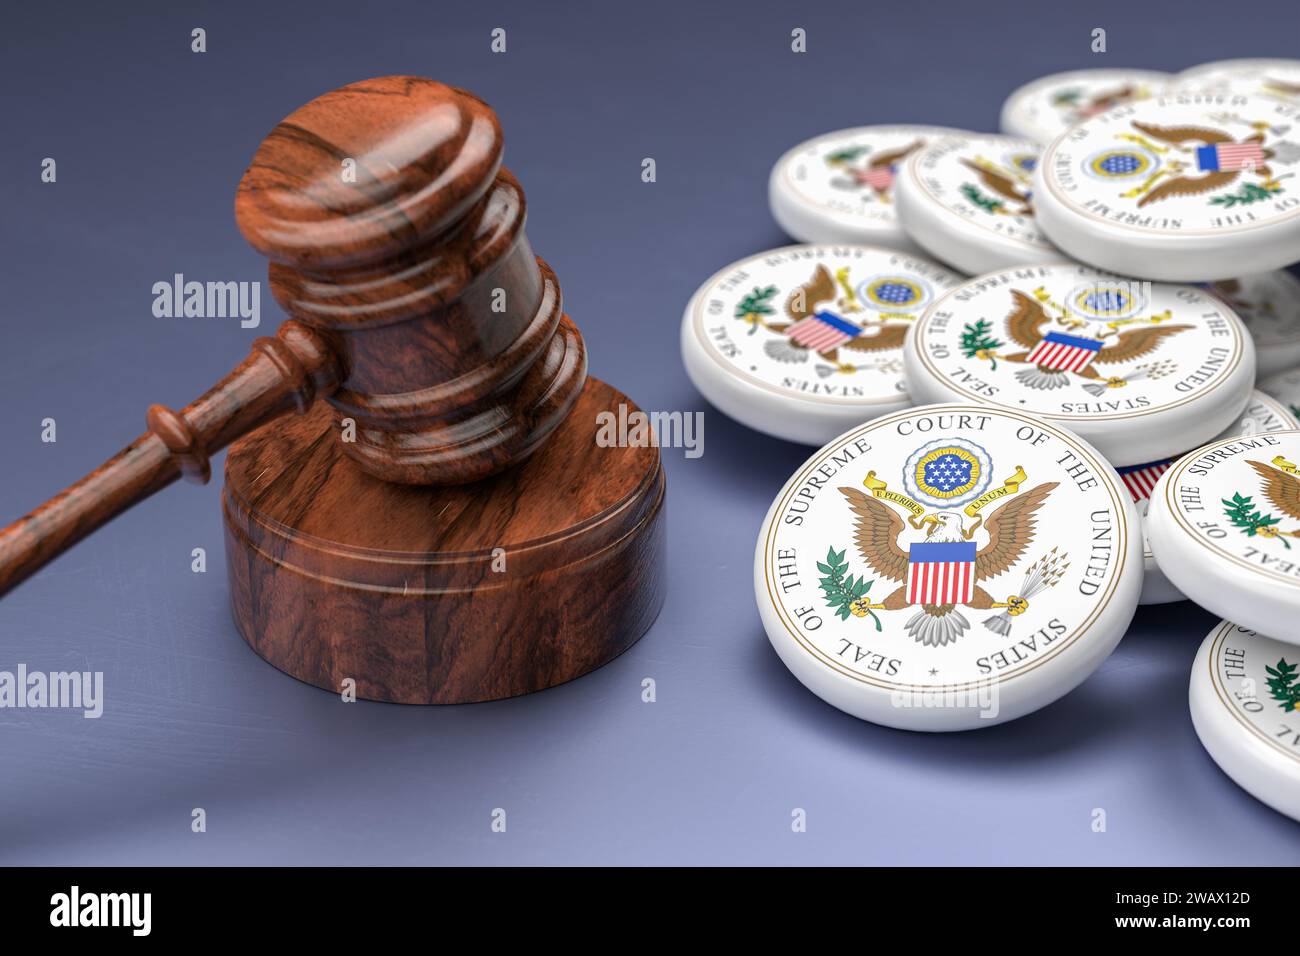 Un marteau de juges sur sa base entouré de logos de la Cour suprême des États-Unis SCOTUS. Mise au point sélective Banque D'Images